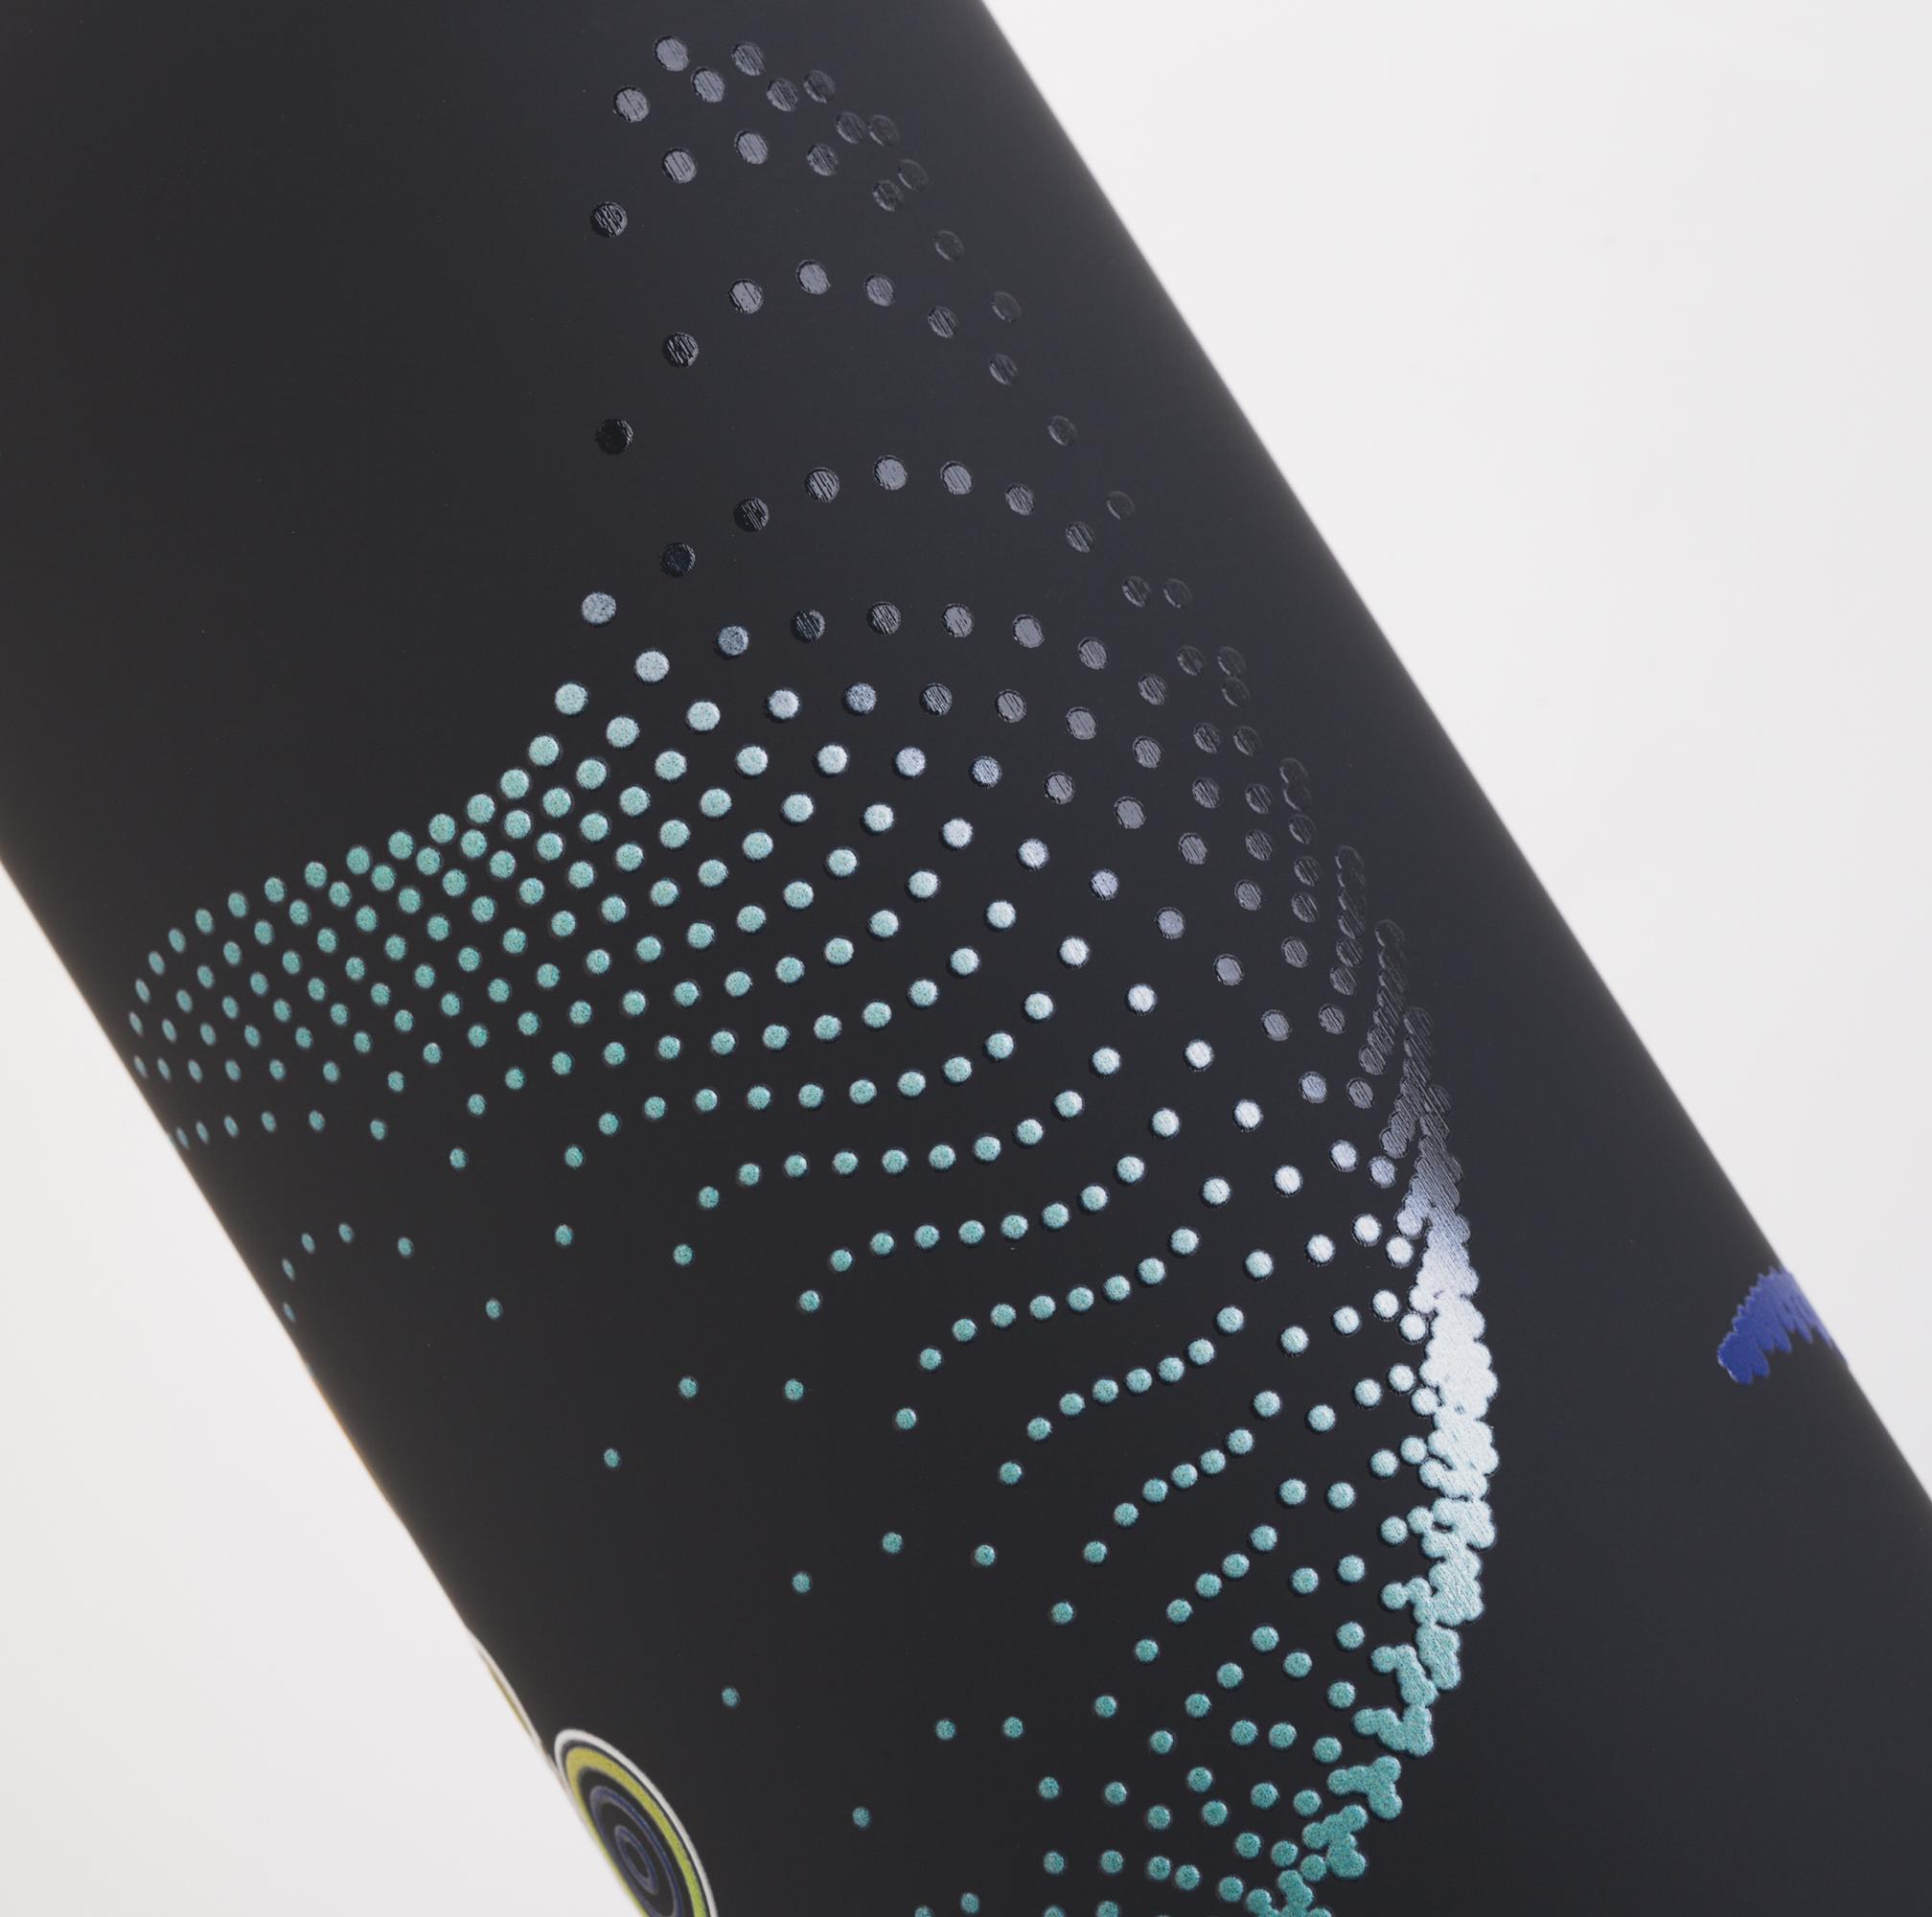 Термобутылка "Бабочки" с объемной UF печатью по окружности, покрытие soft touch, цвет черный, фото 2